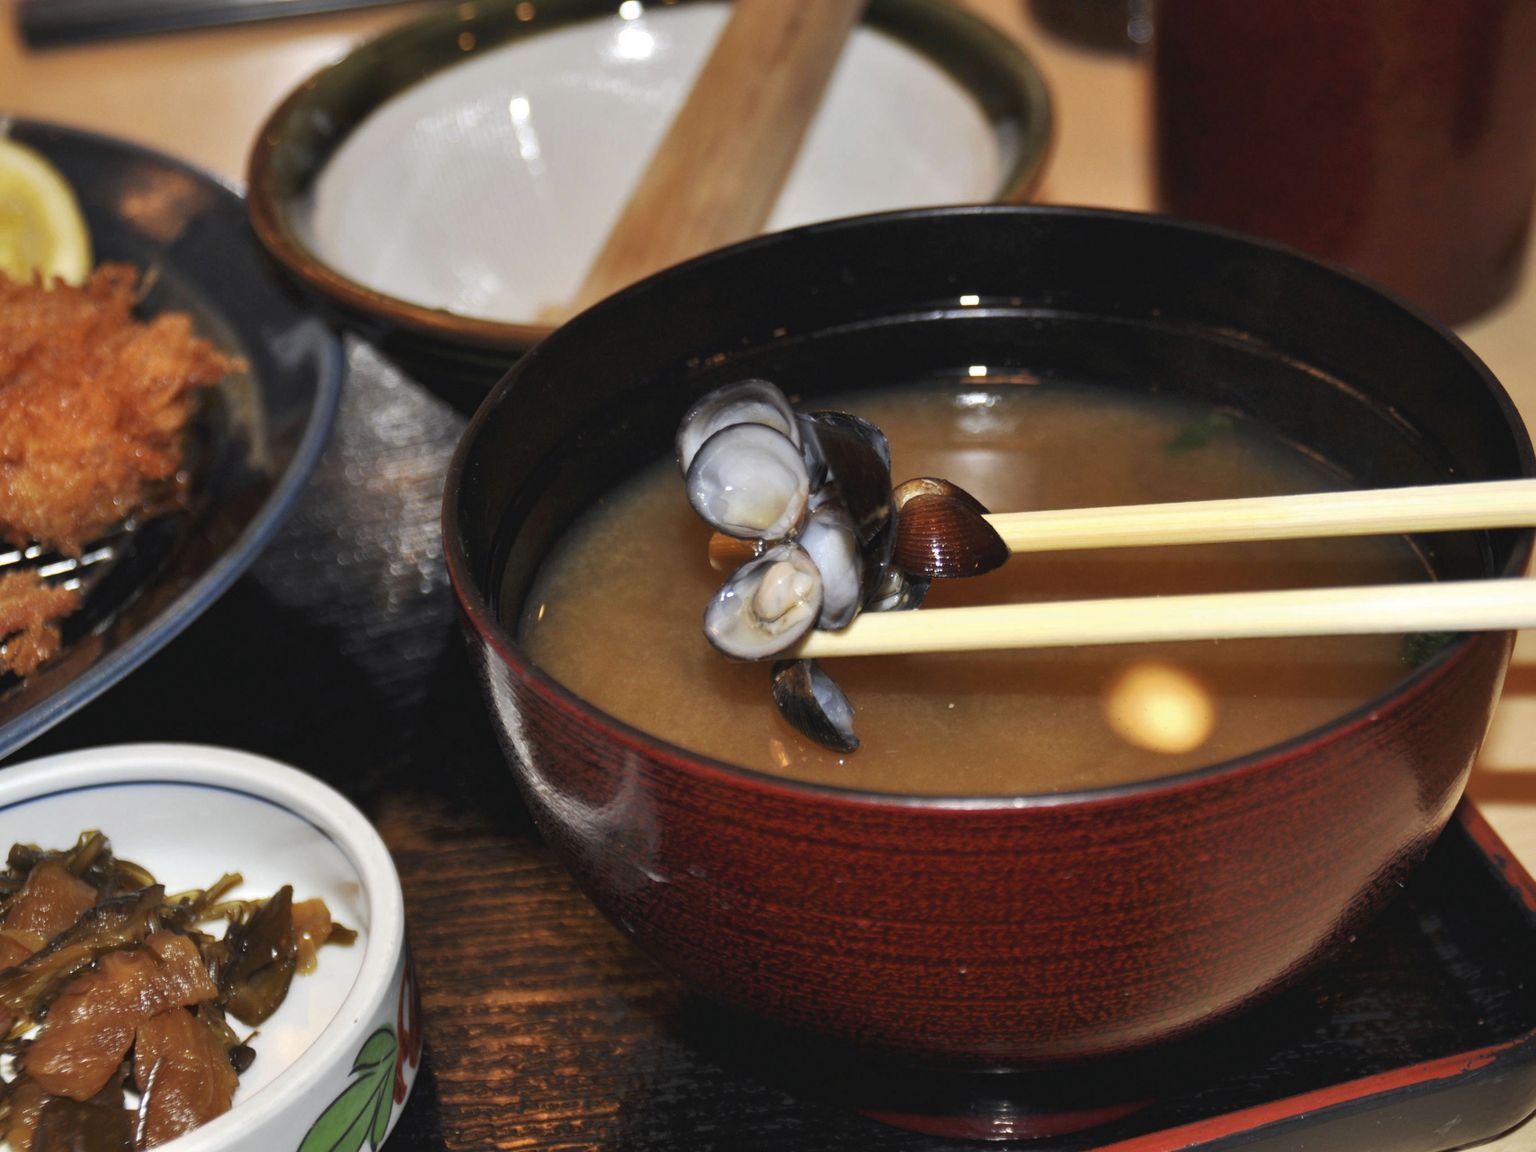 Jaapani rahvustoidule misosupile annab maitse peamiselt dashi-puljong, mida peetakse tänini kõige klassikalisemaks puhta umami maitse näiteks